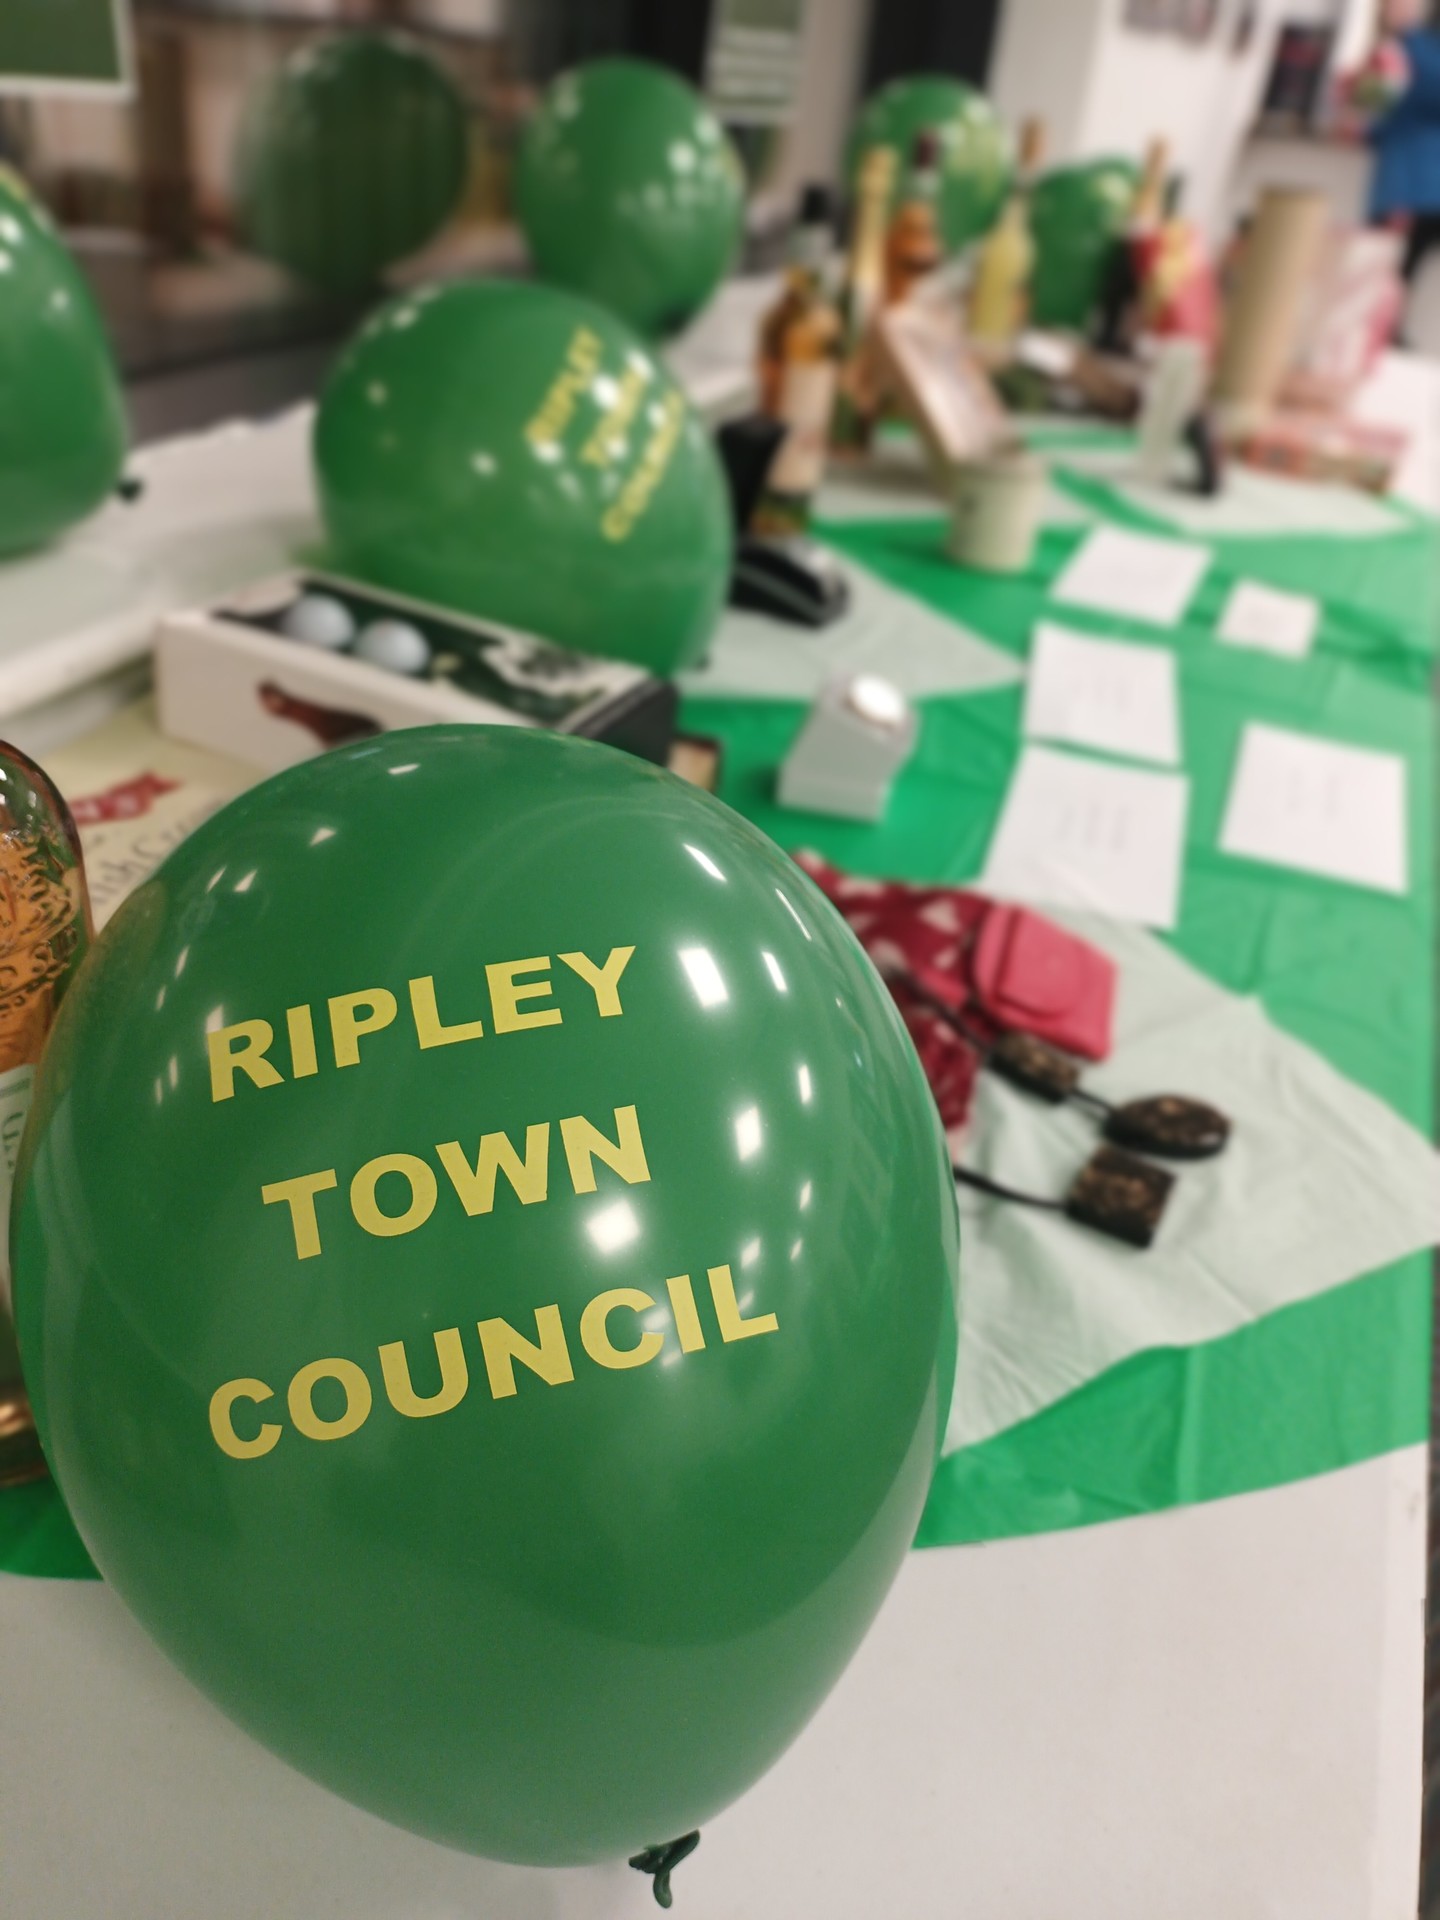 Green Ripley Town Council balloon